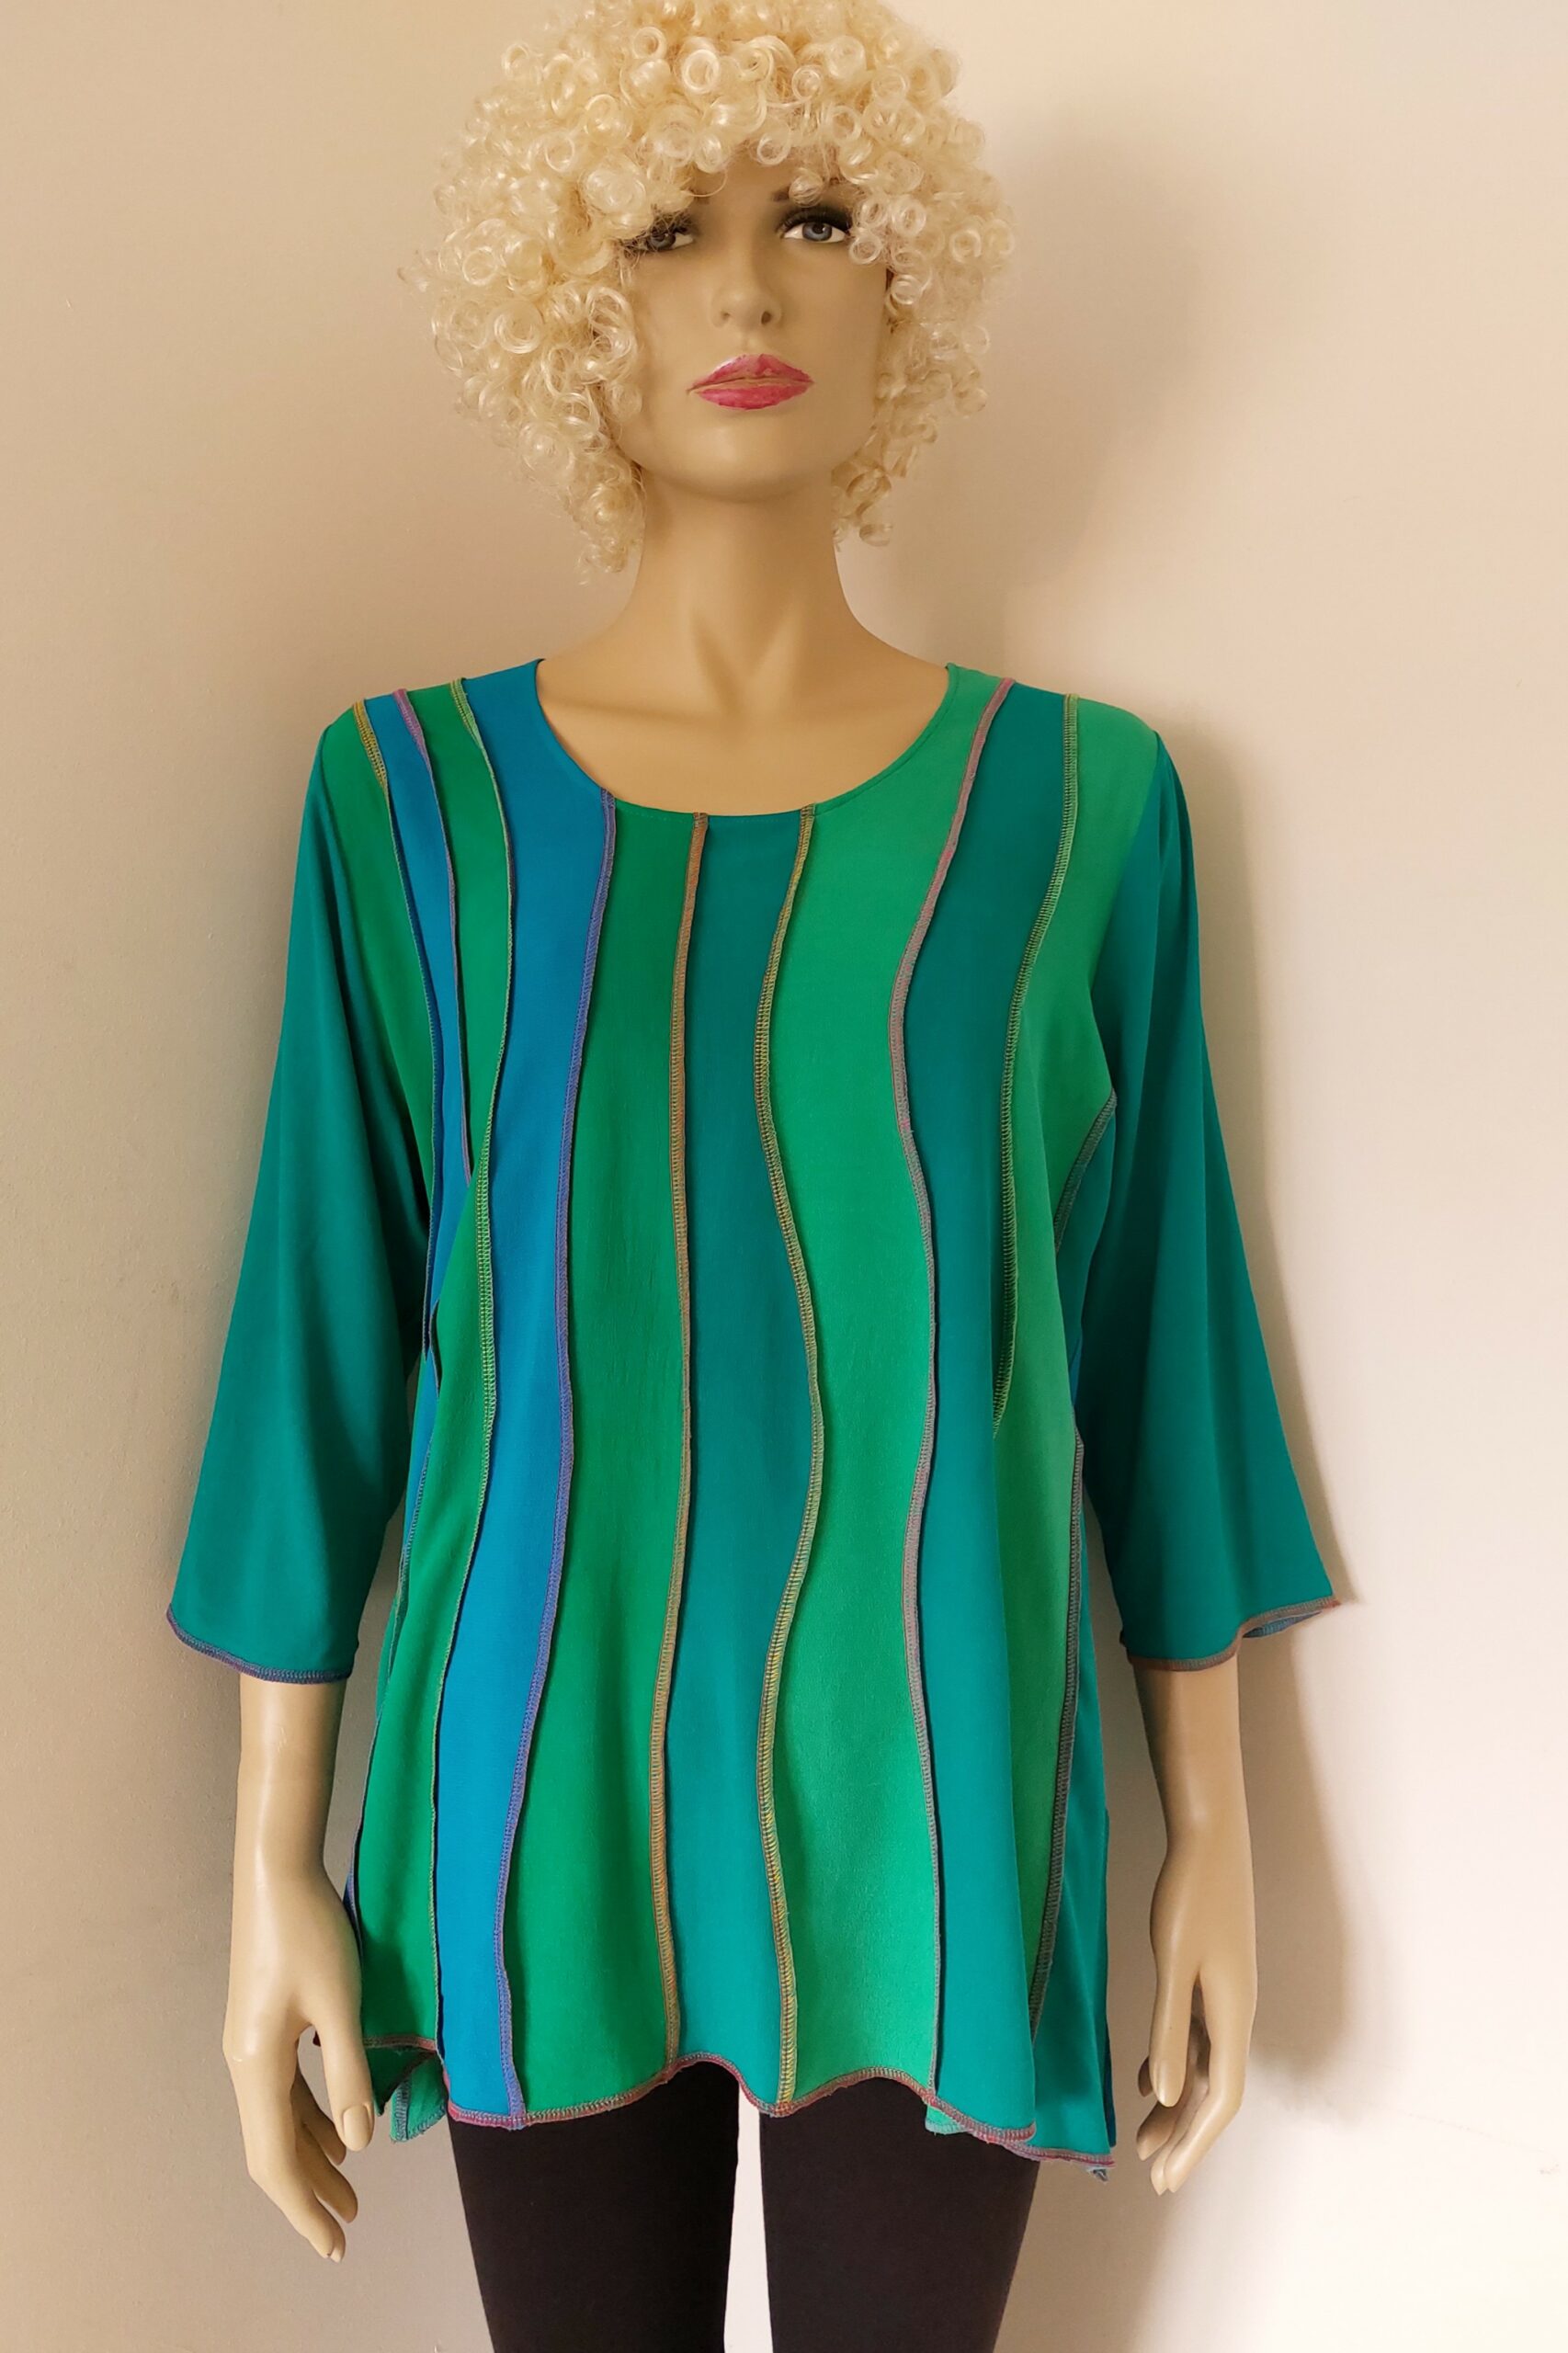 groen met blauwe viscose blouse, met kleurrijke stiksels en golvende banen